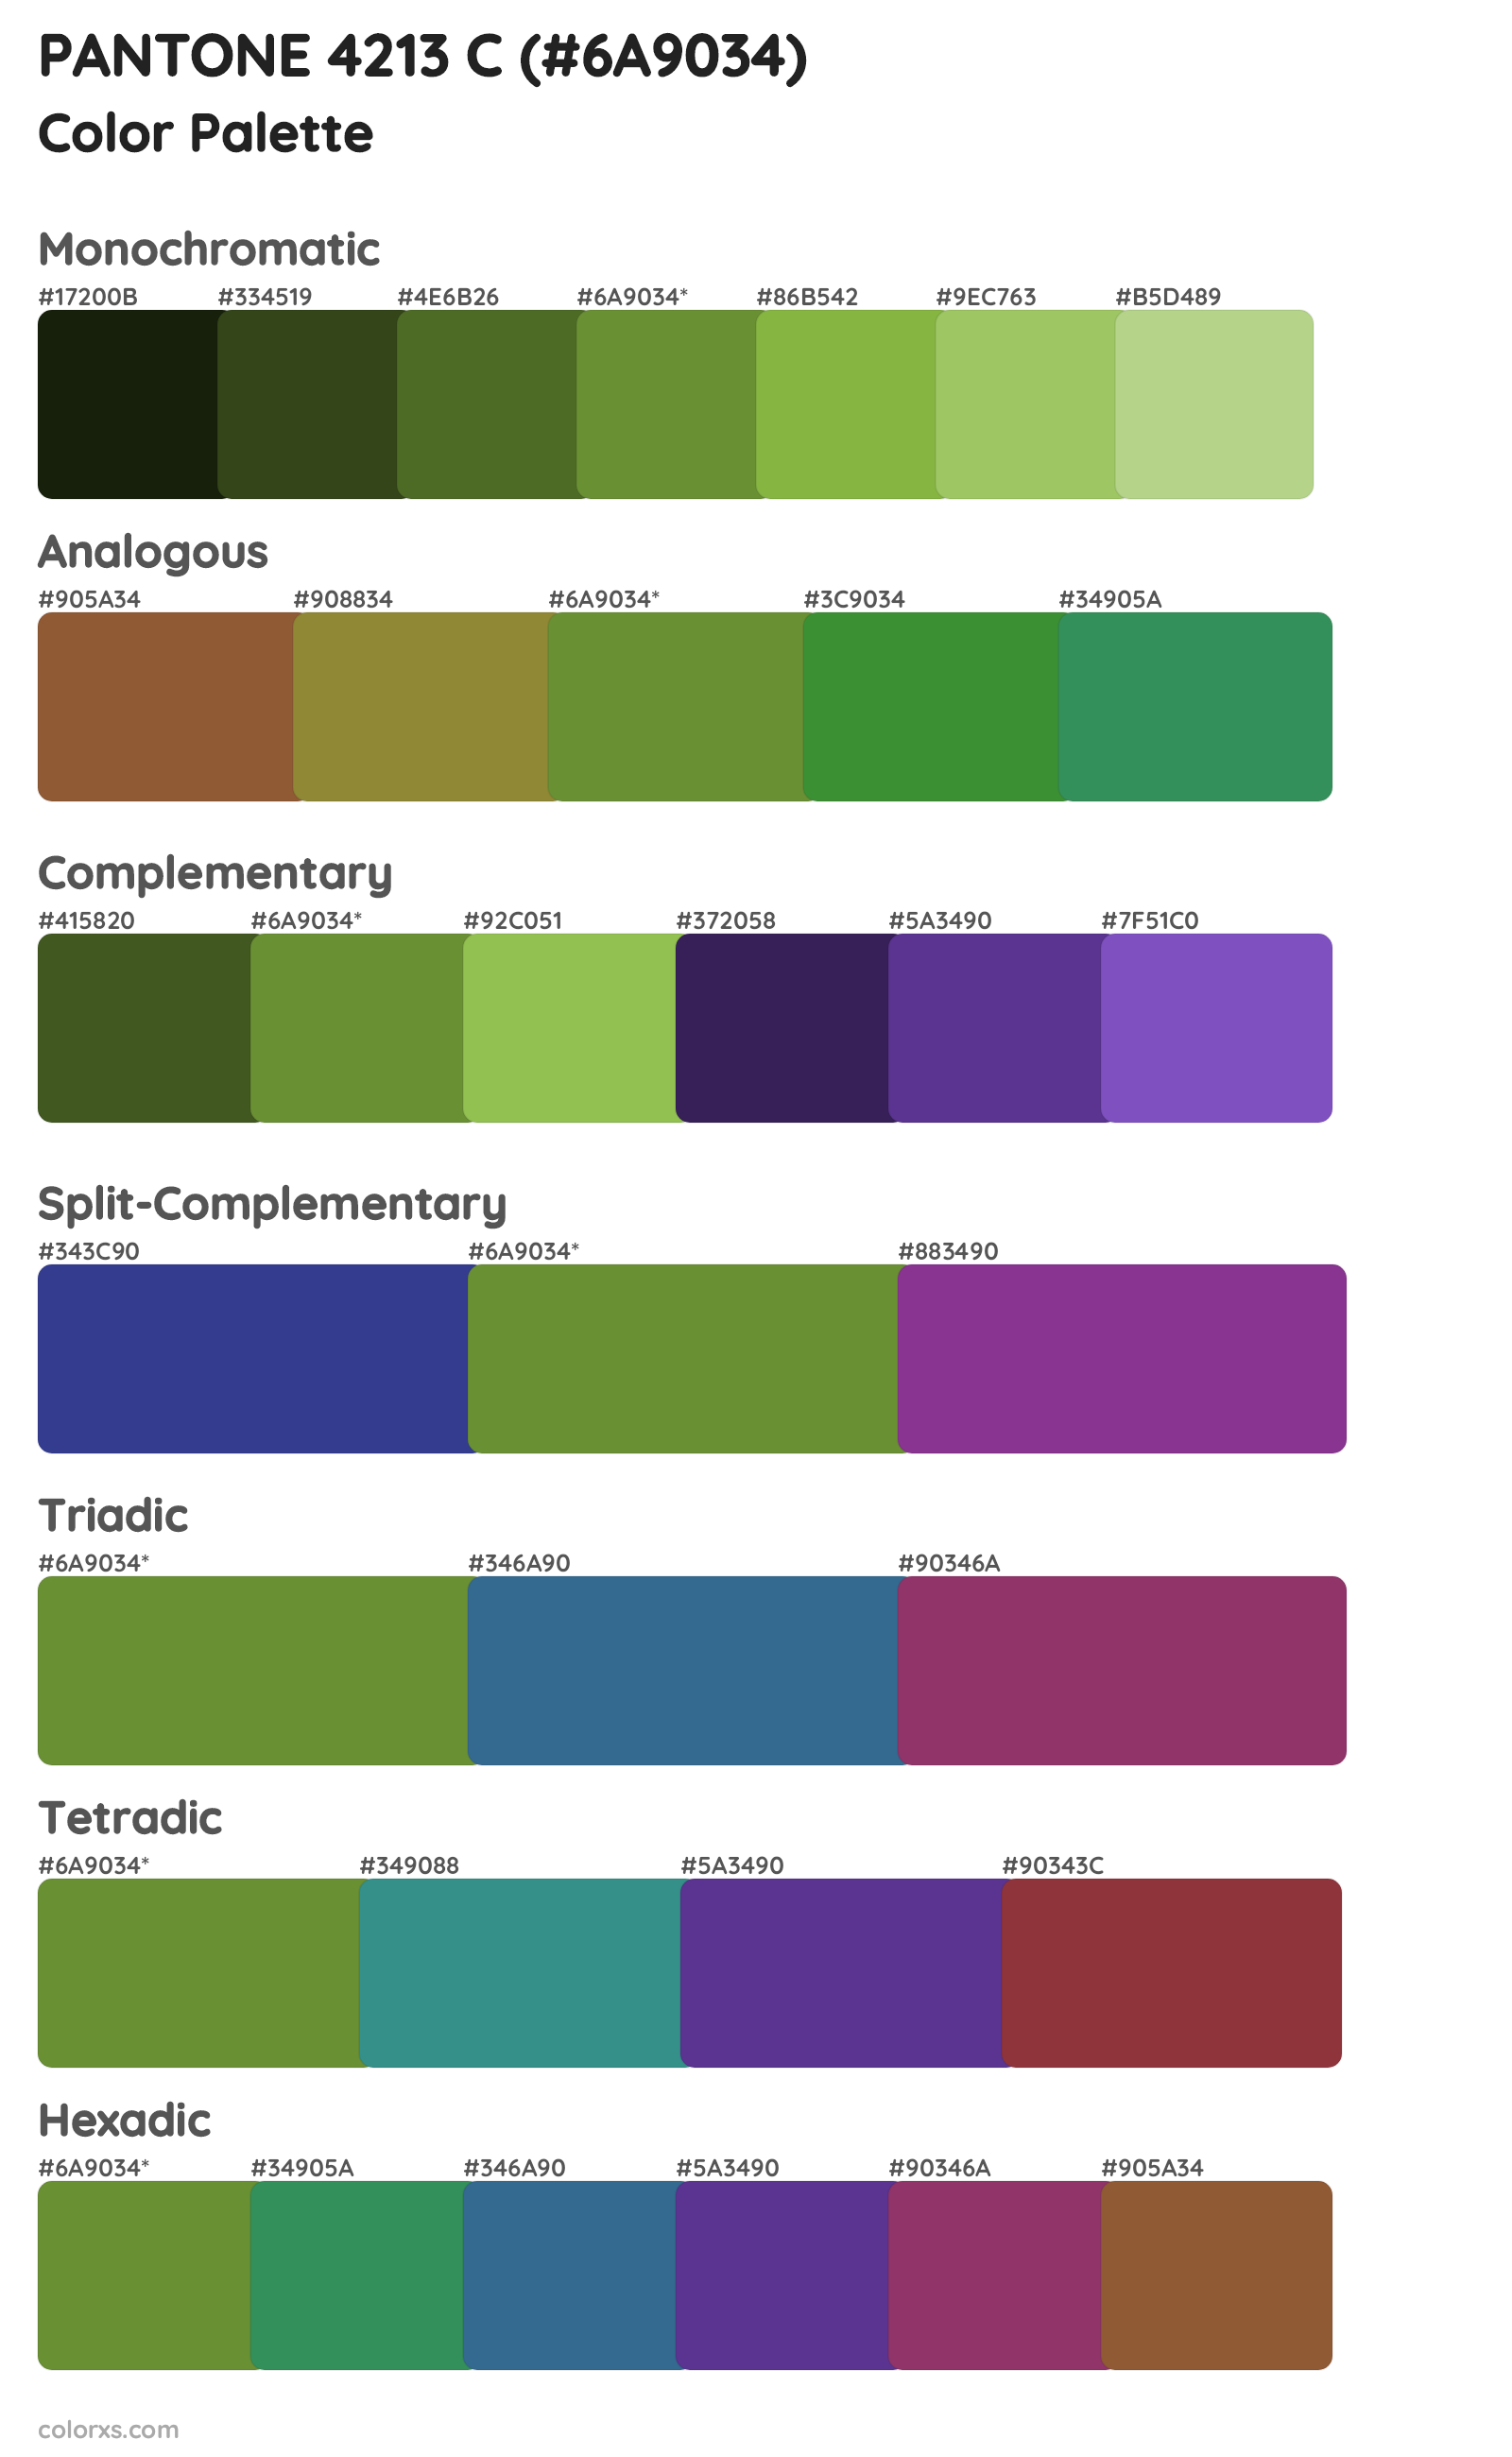 PANTONE 4213 C Color Scheme Palettes